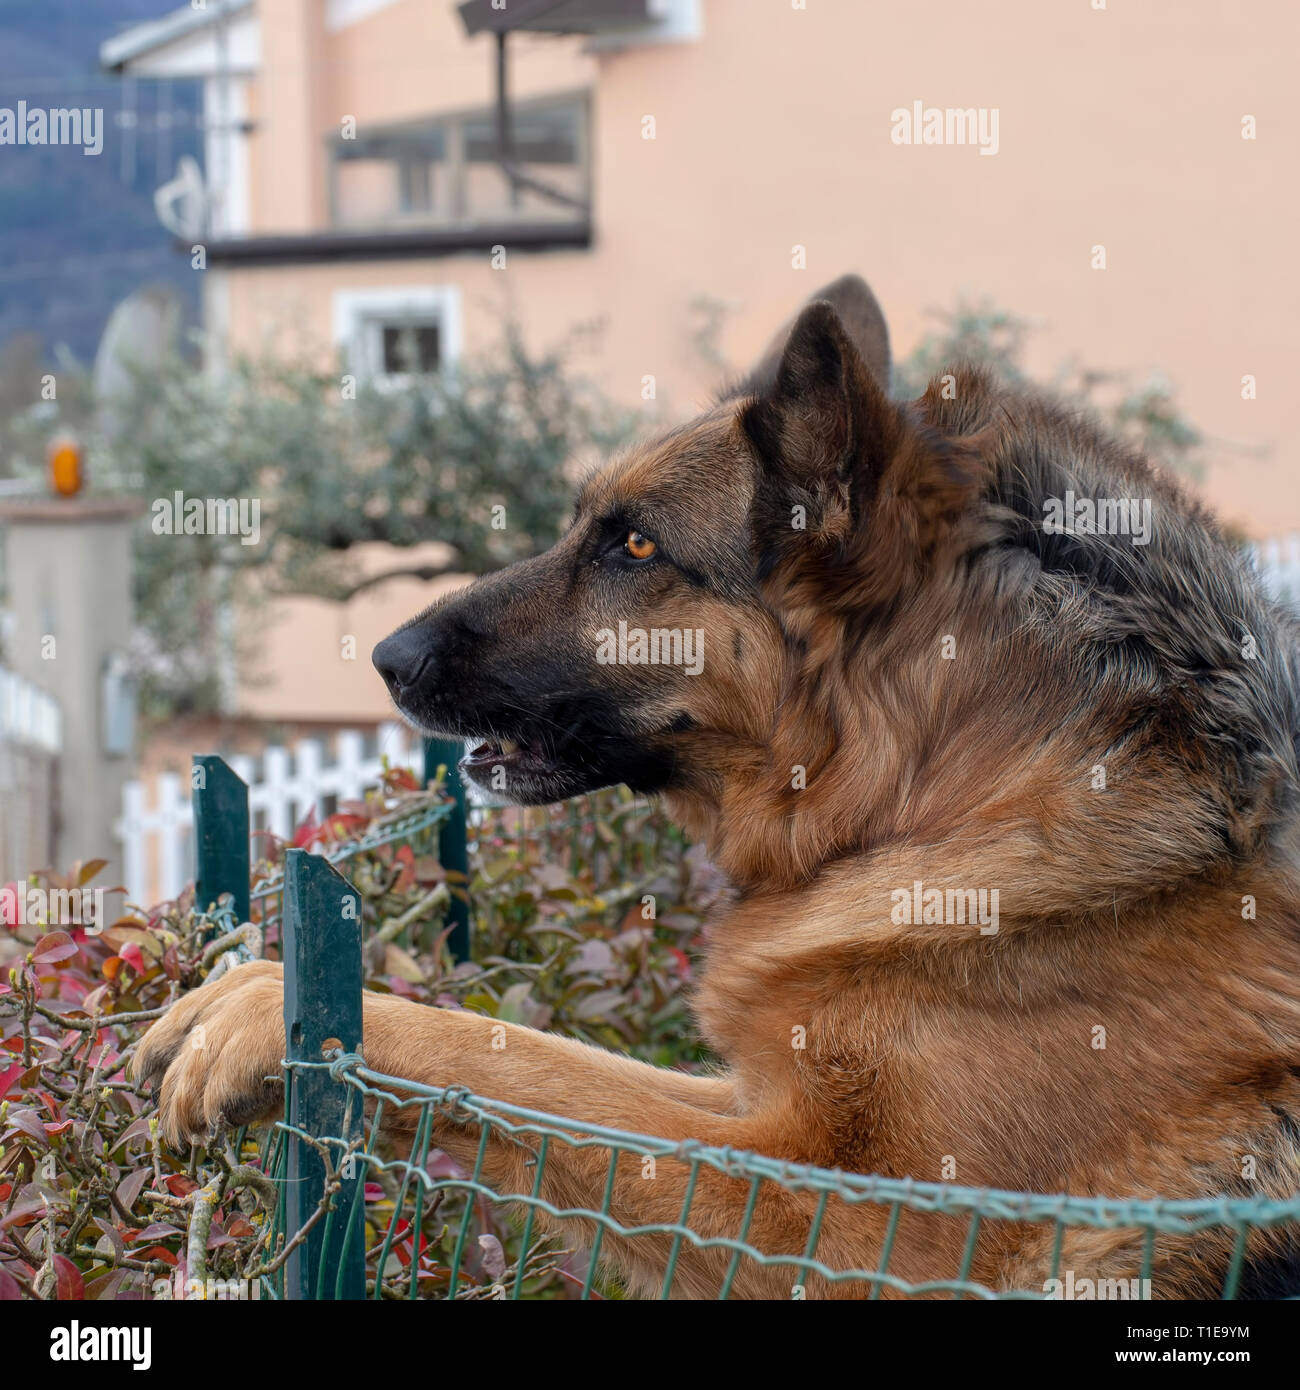 Colpo di Testa di pastore tedesco o cane alsaziano all'aperto in giardino. Bello cane. Foto Stock